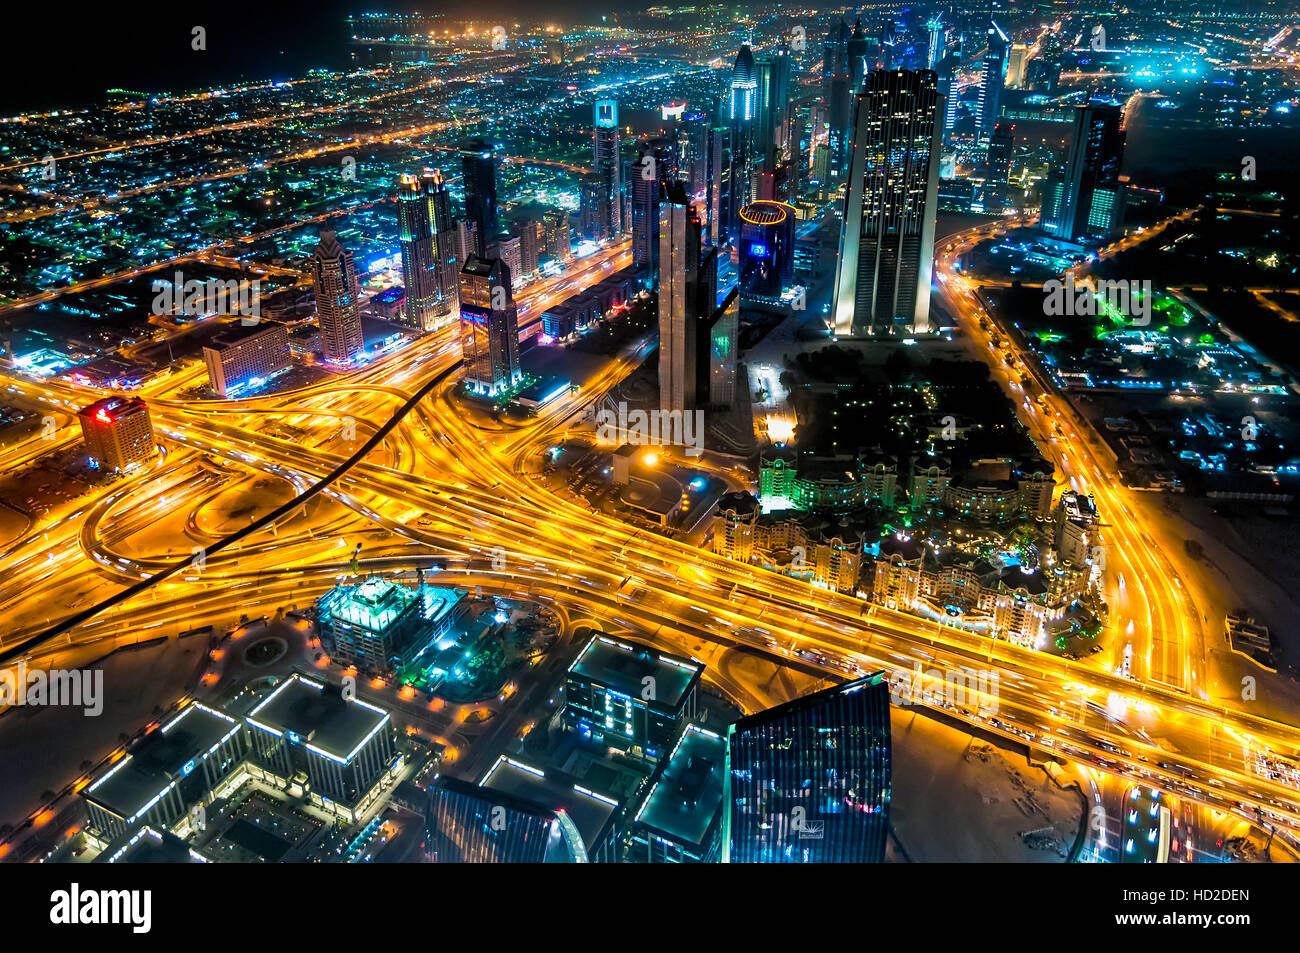 Dubai, Vereinigte Arabische Emirate - 6. Januar 2012: Sheikh Zayed Road Nacht Blick vom Burj Kalifa "At the Top" Stockfoto